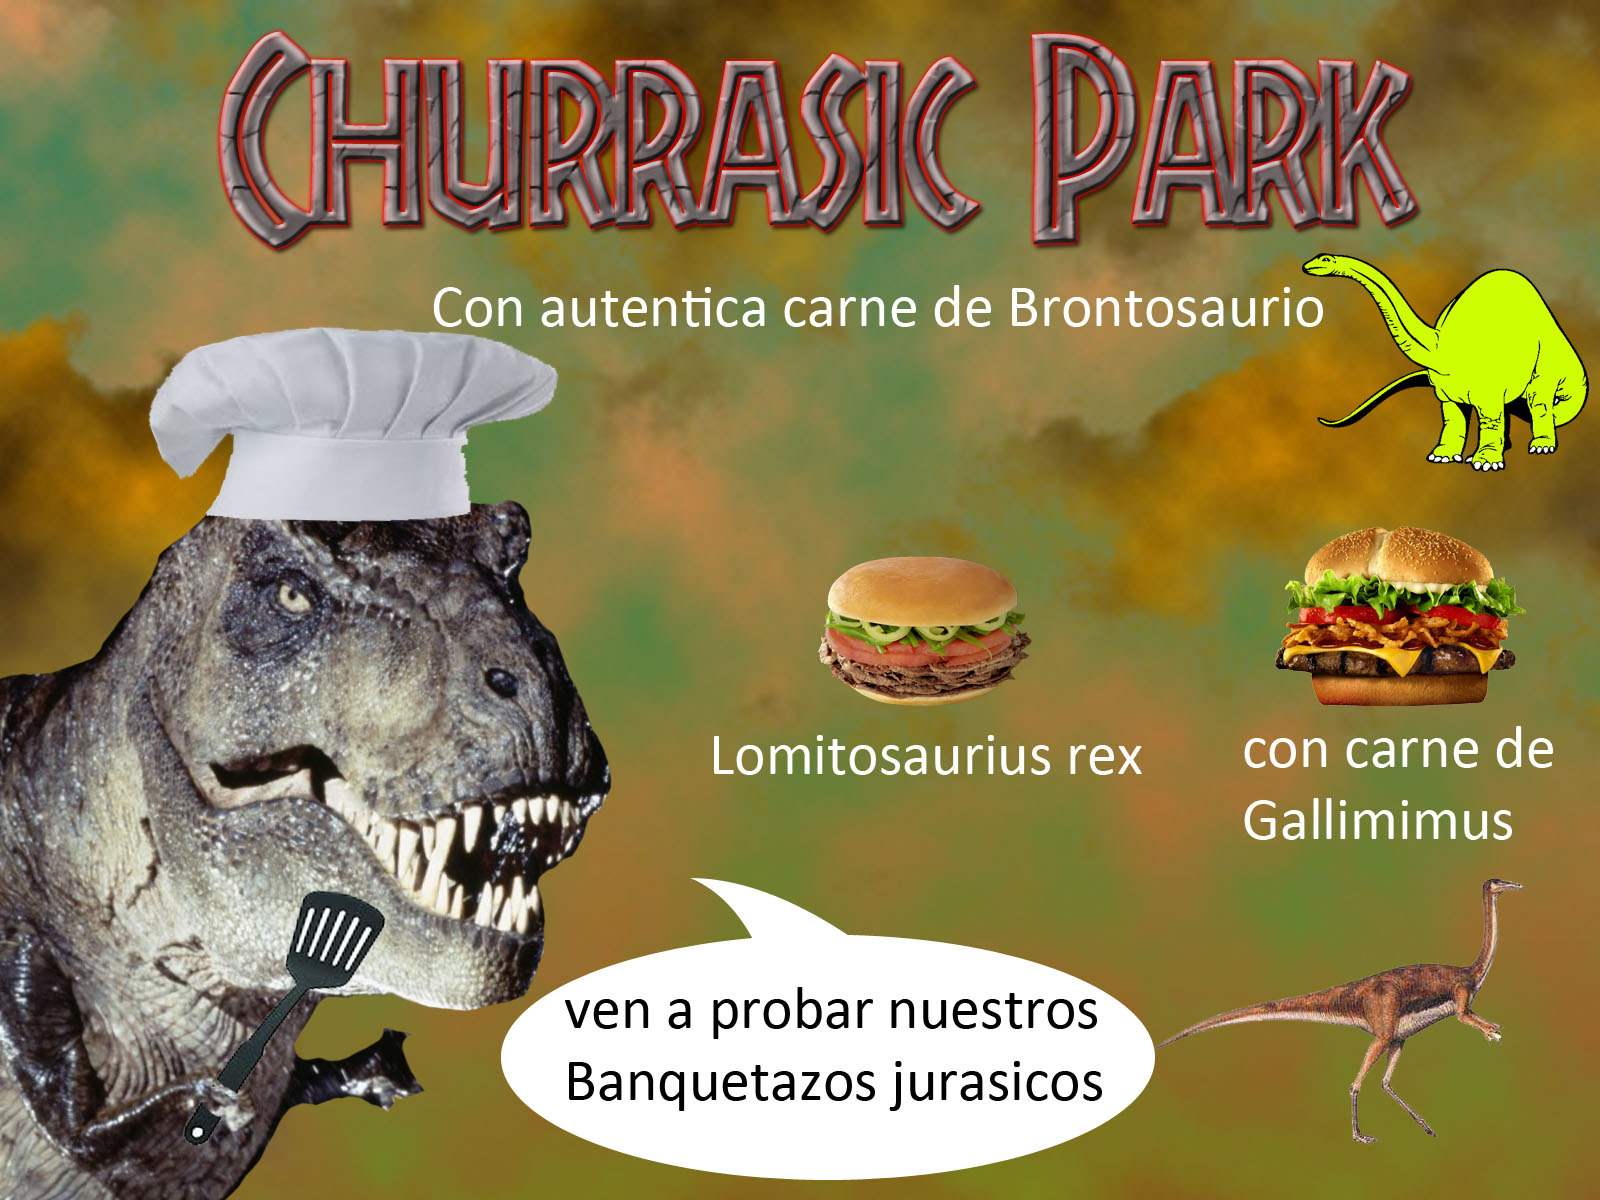 Churrasic Park (': - meme